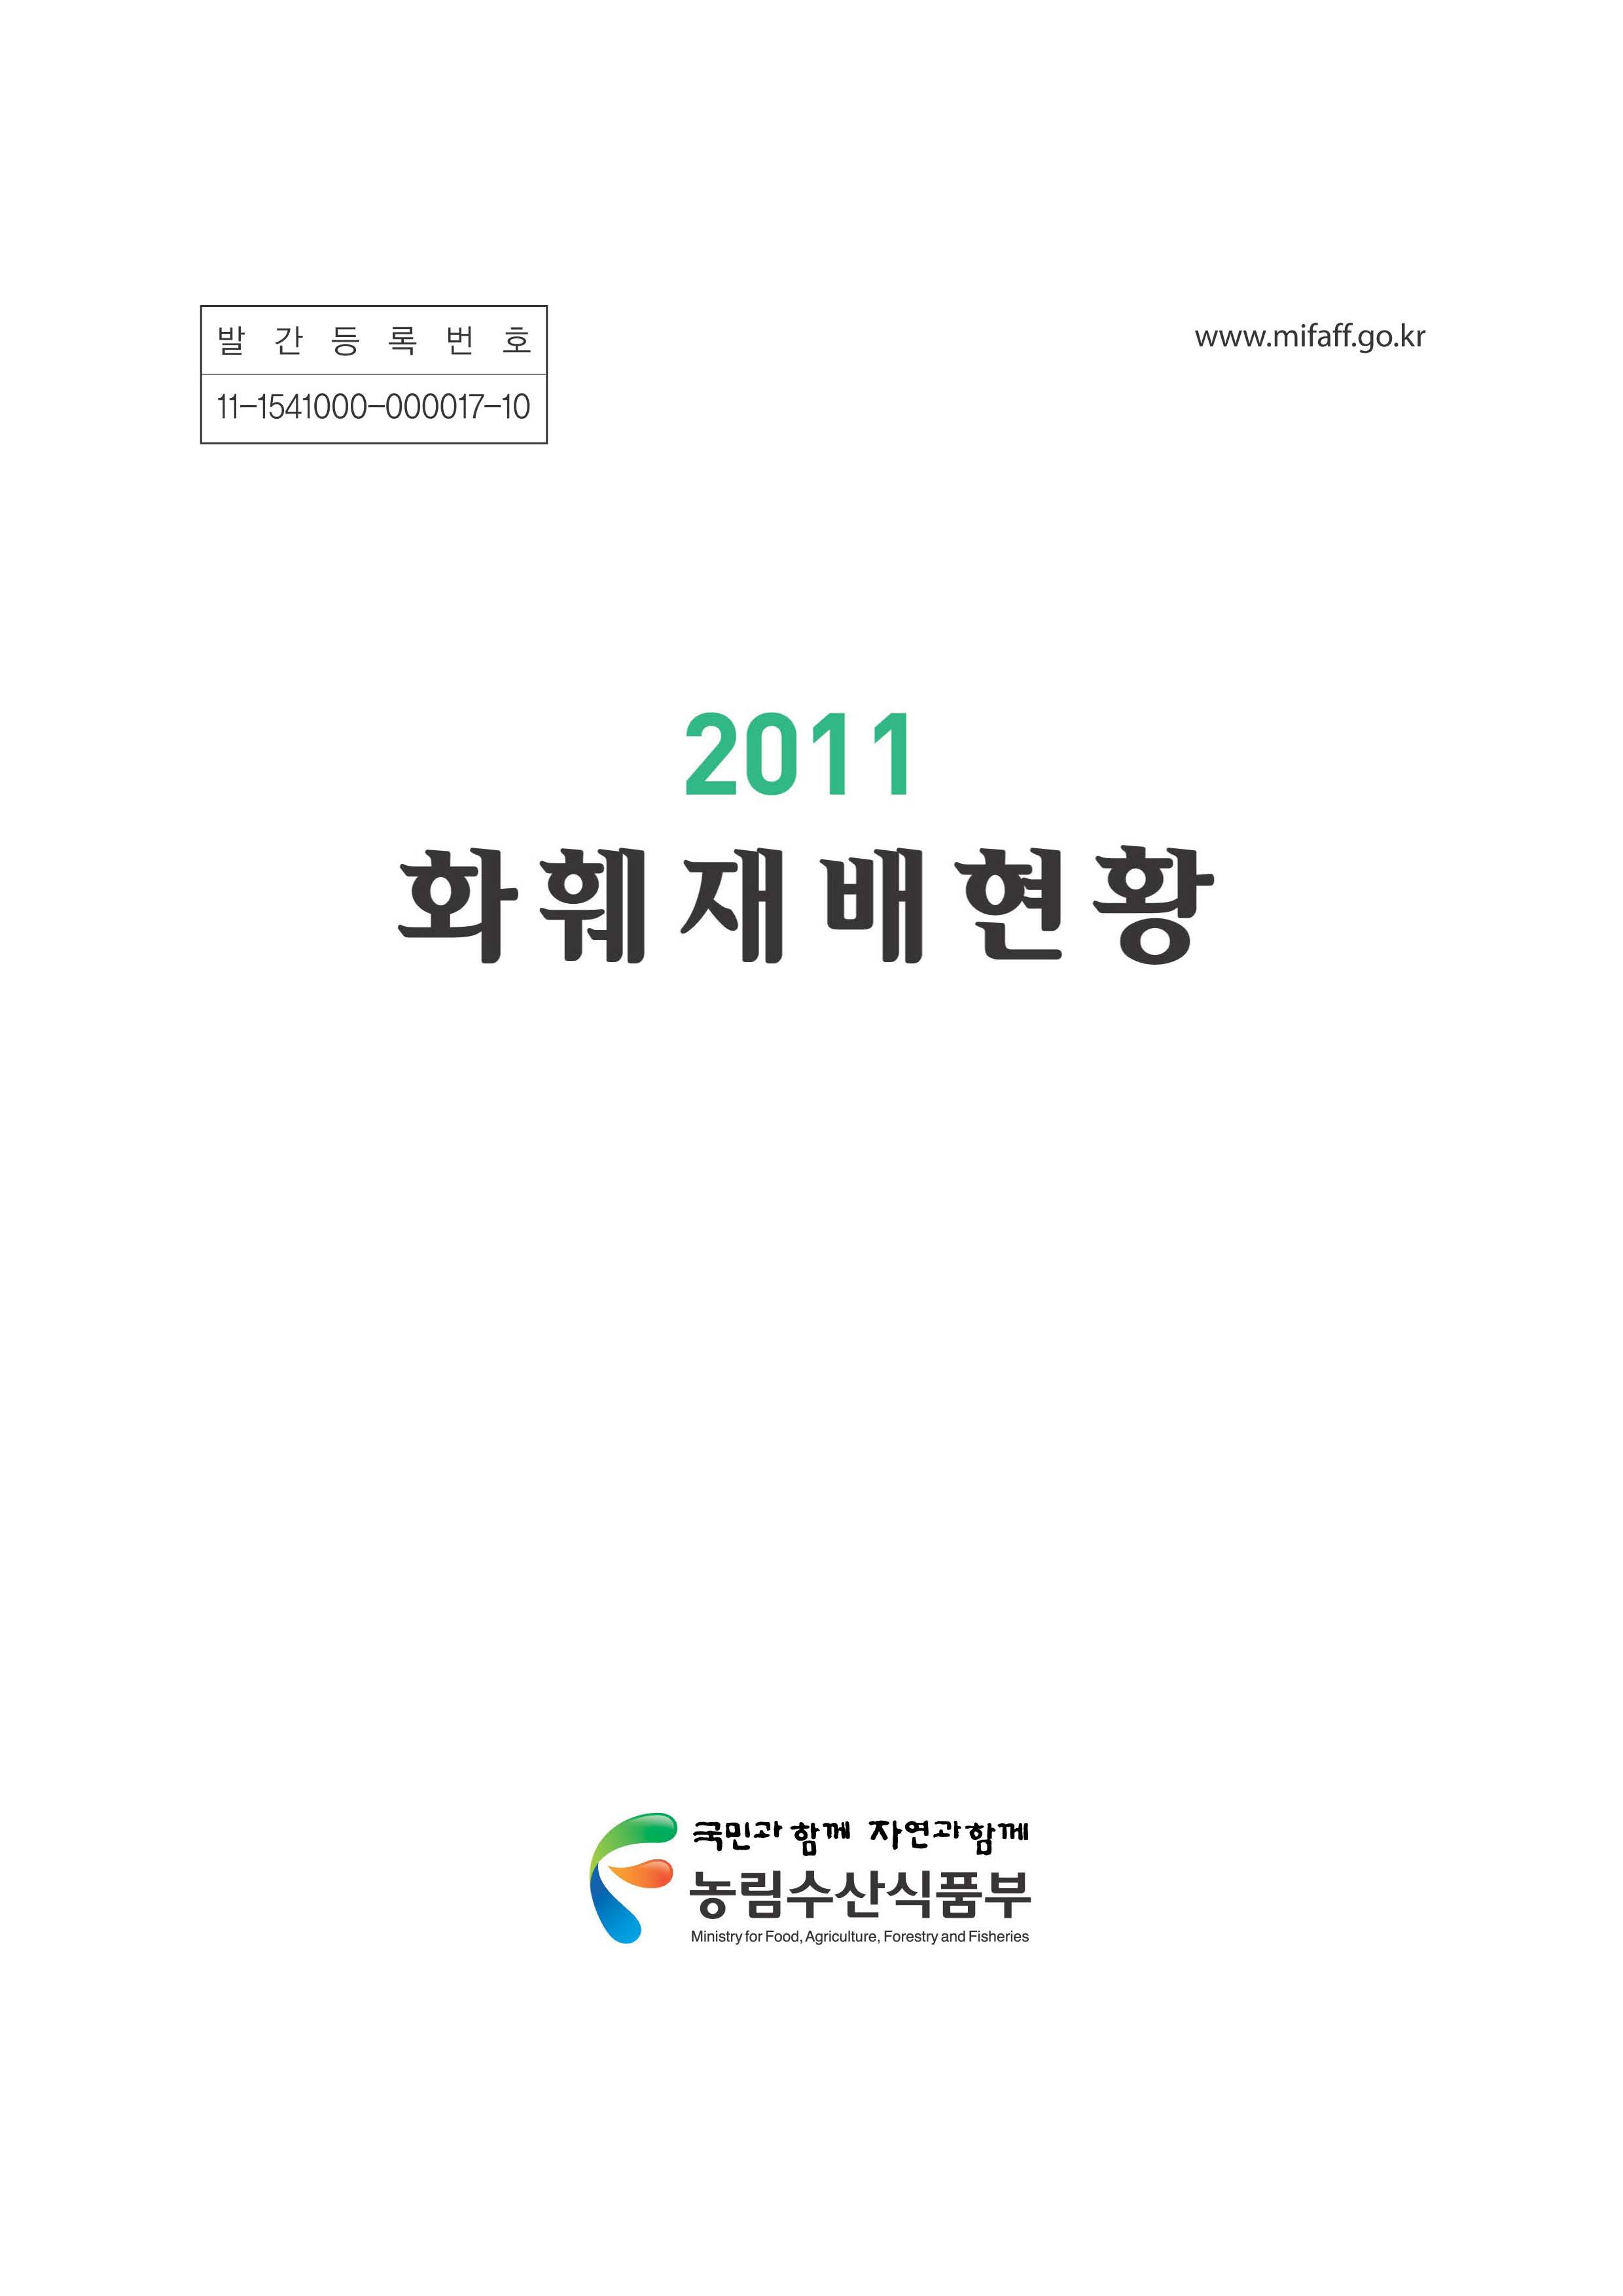 화훼재배현황 / 농림수산식품부 과수화훼과[편]. 2011